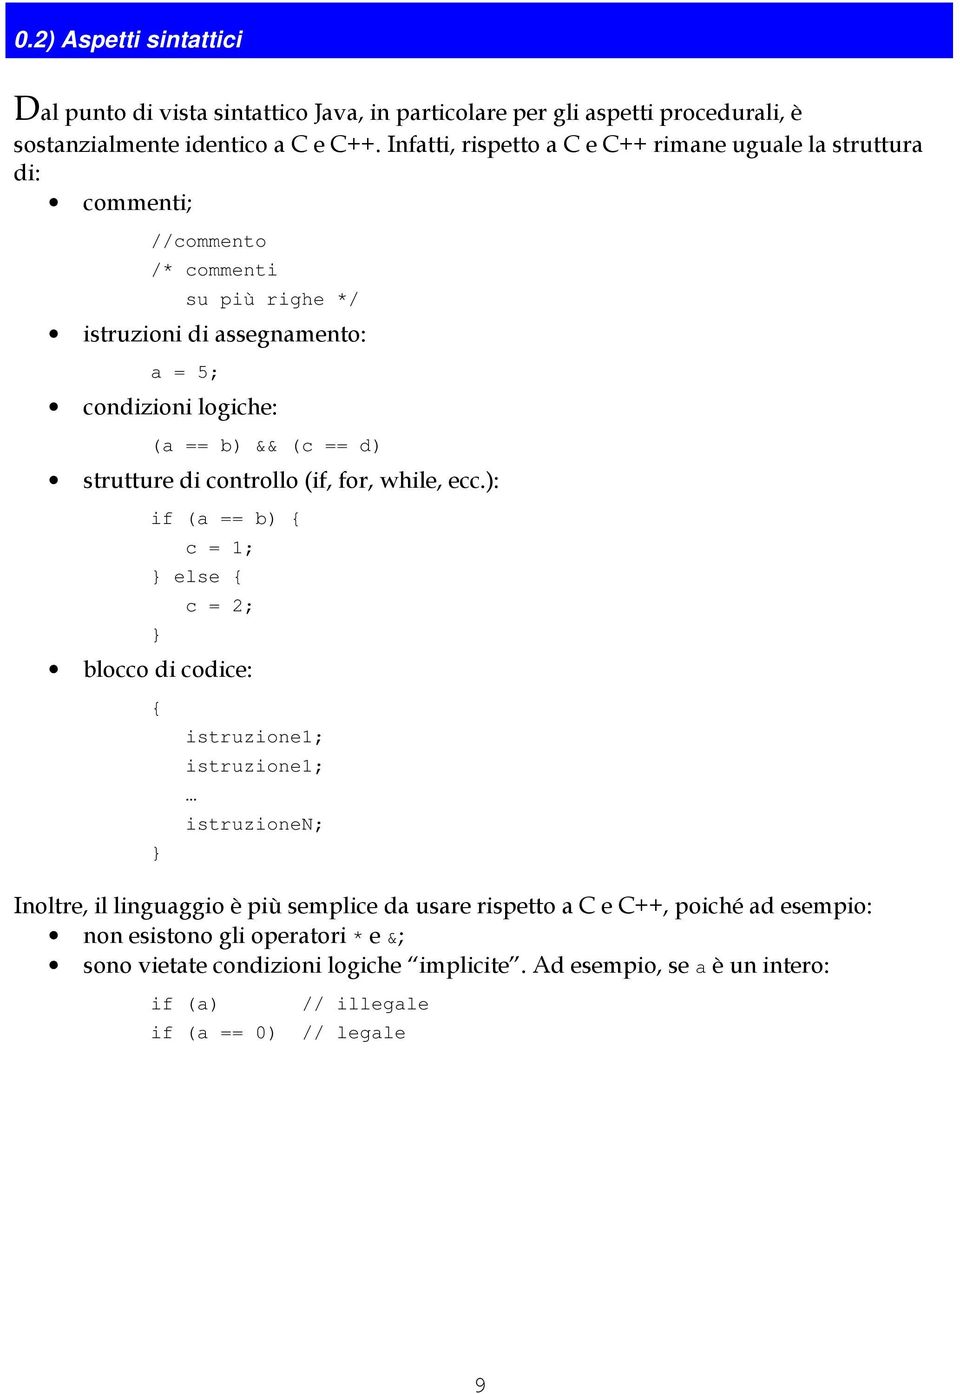 (c == d) strutture di controllo (if, for, while, ecc.